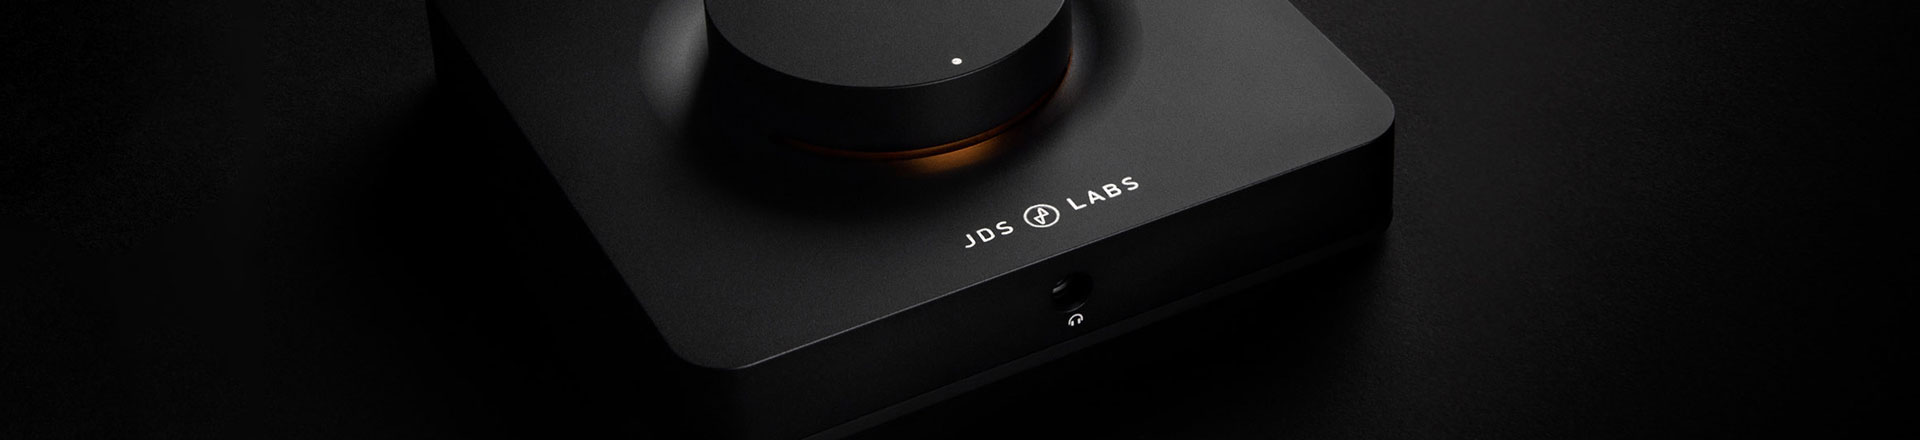 JDS Labs - elektronika prosto z USA i w dodatku w dobrej cenie